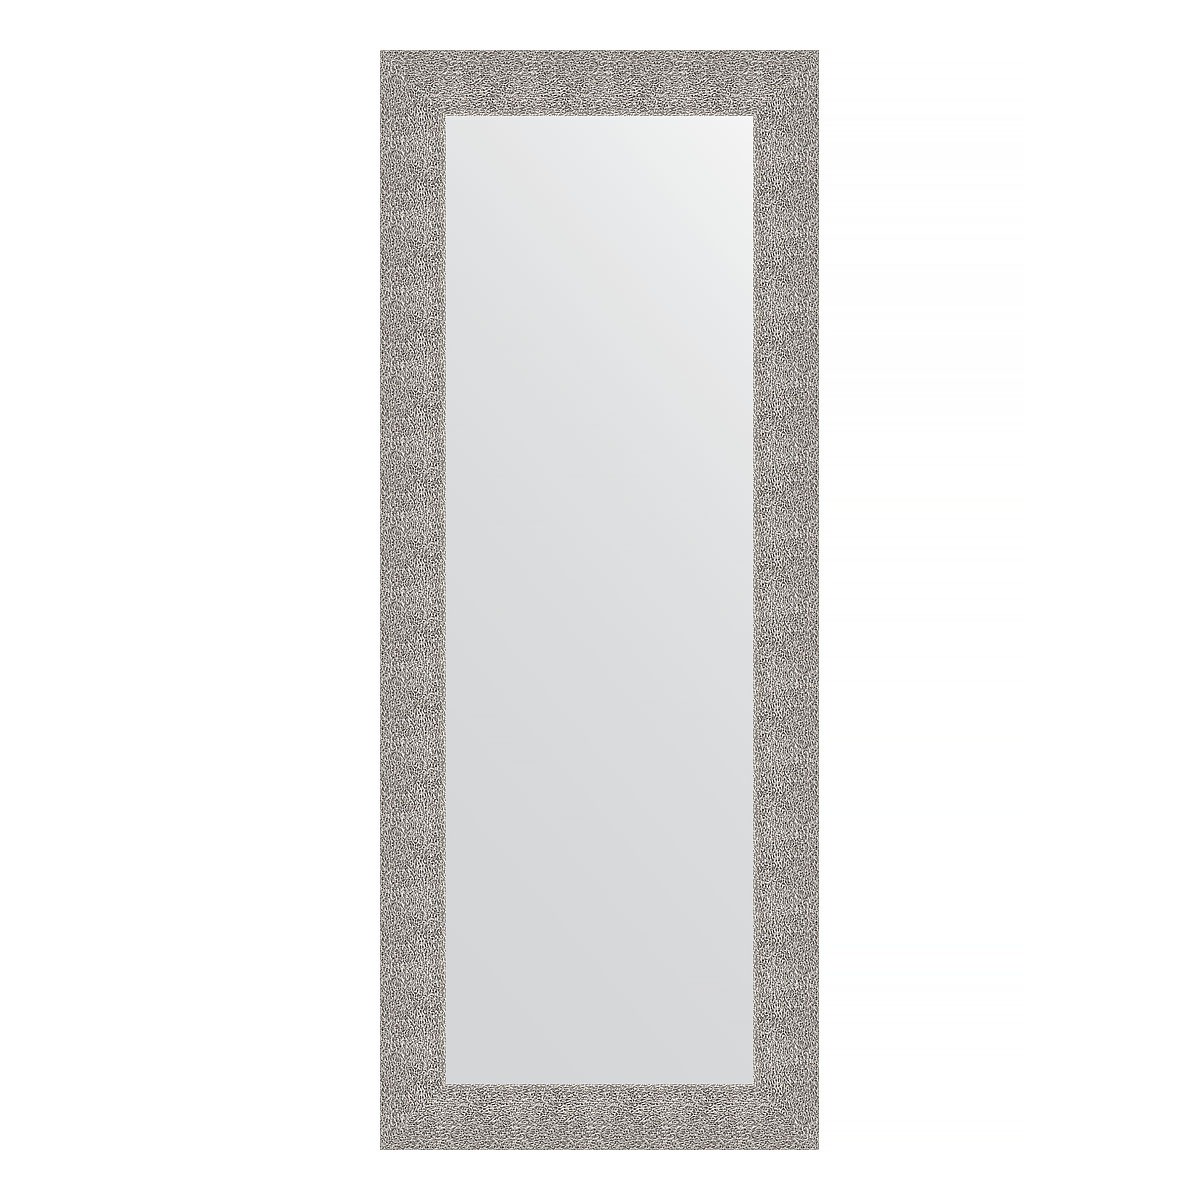 Зеркало в багетной раме Evoform чеканка серебряная 90 мм 60х150 см зеркало 51х141 см чеканка белая evoform definite by 3098